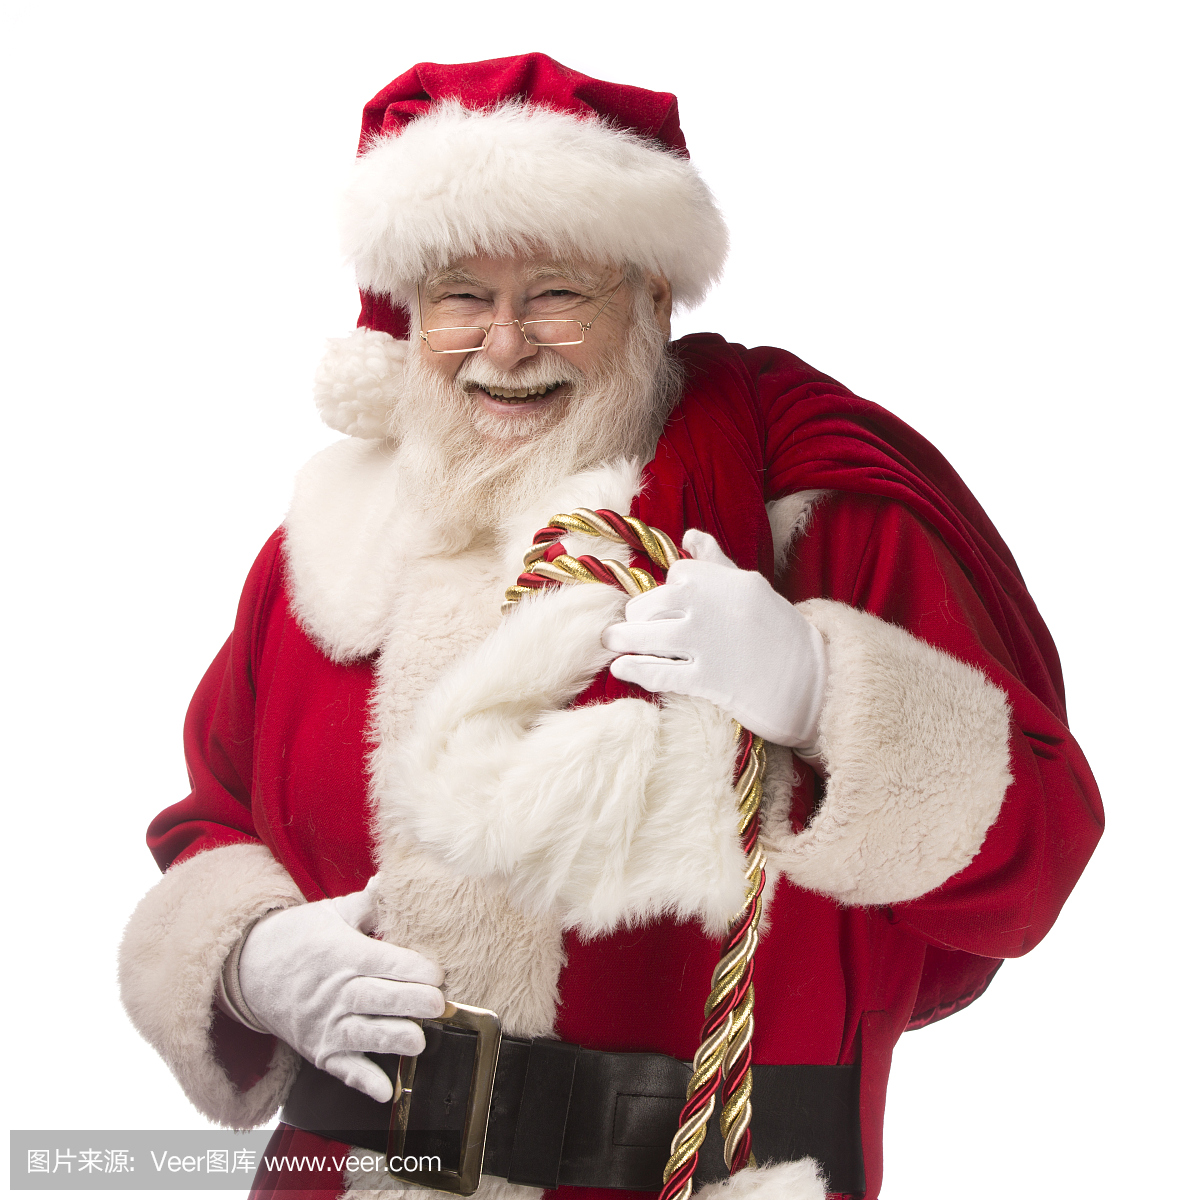 真实圣诞老人的照片有一个礼品袋